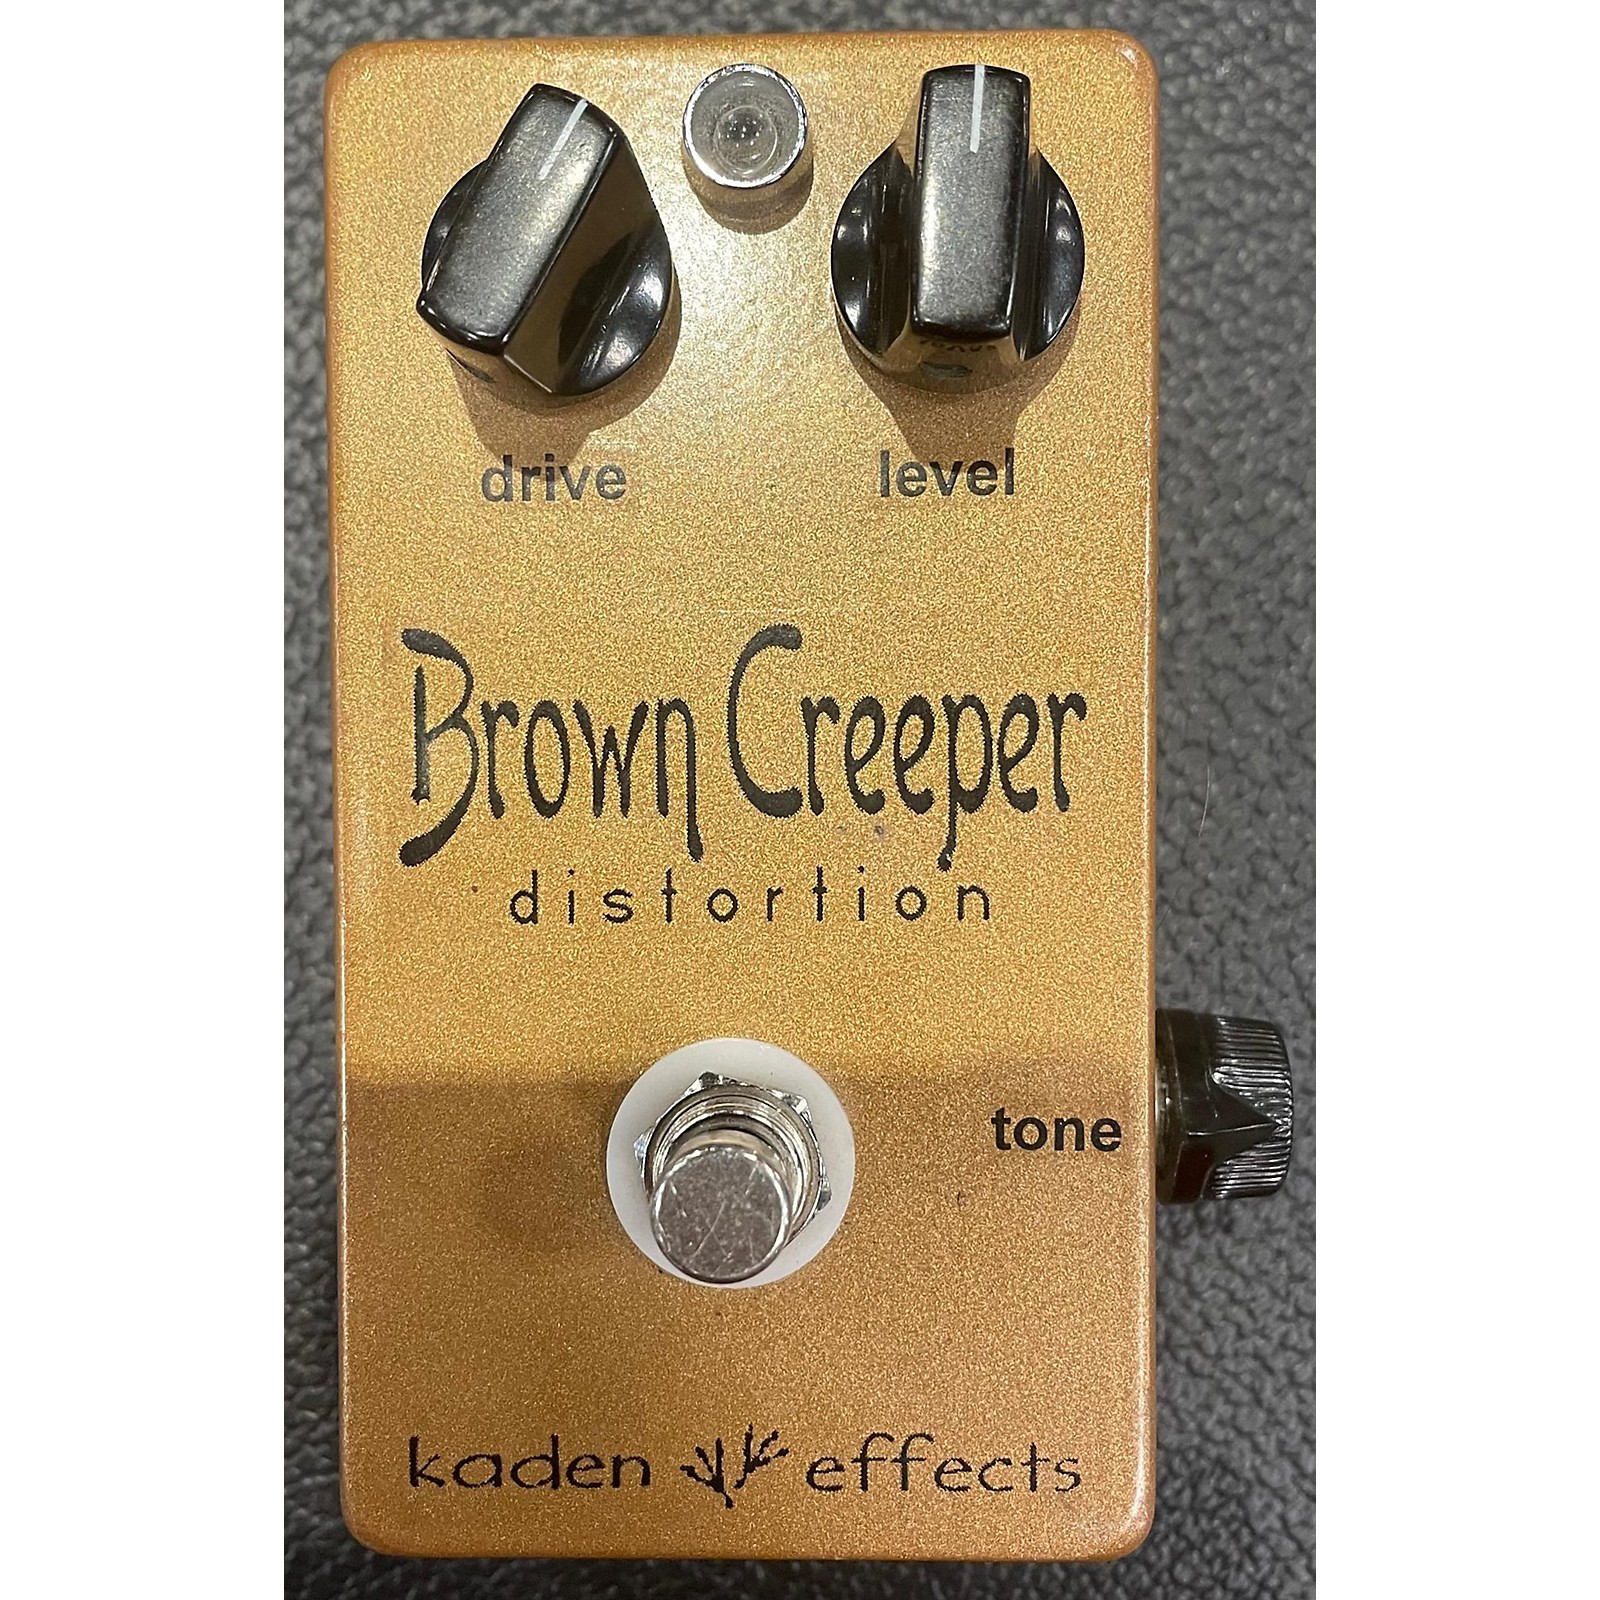 【入荷処理】[良品] kaden effects Brown Creeper ゲインの幅広さが秀逸/数あるMarshall系の中でもバランスが良い1台 [UG709] ディストーション